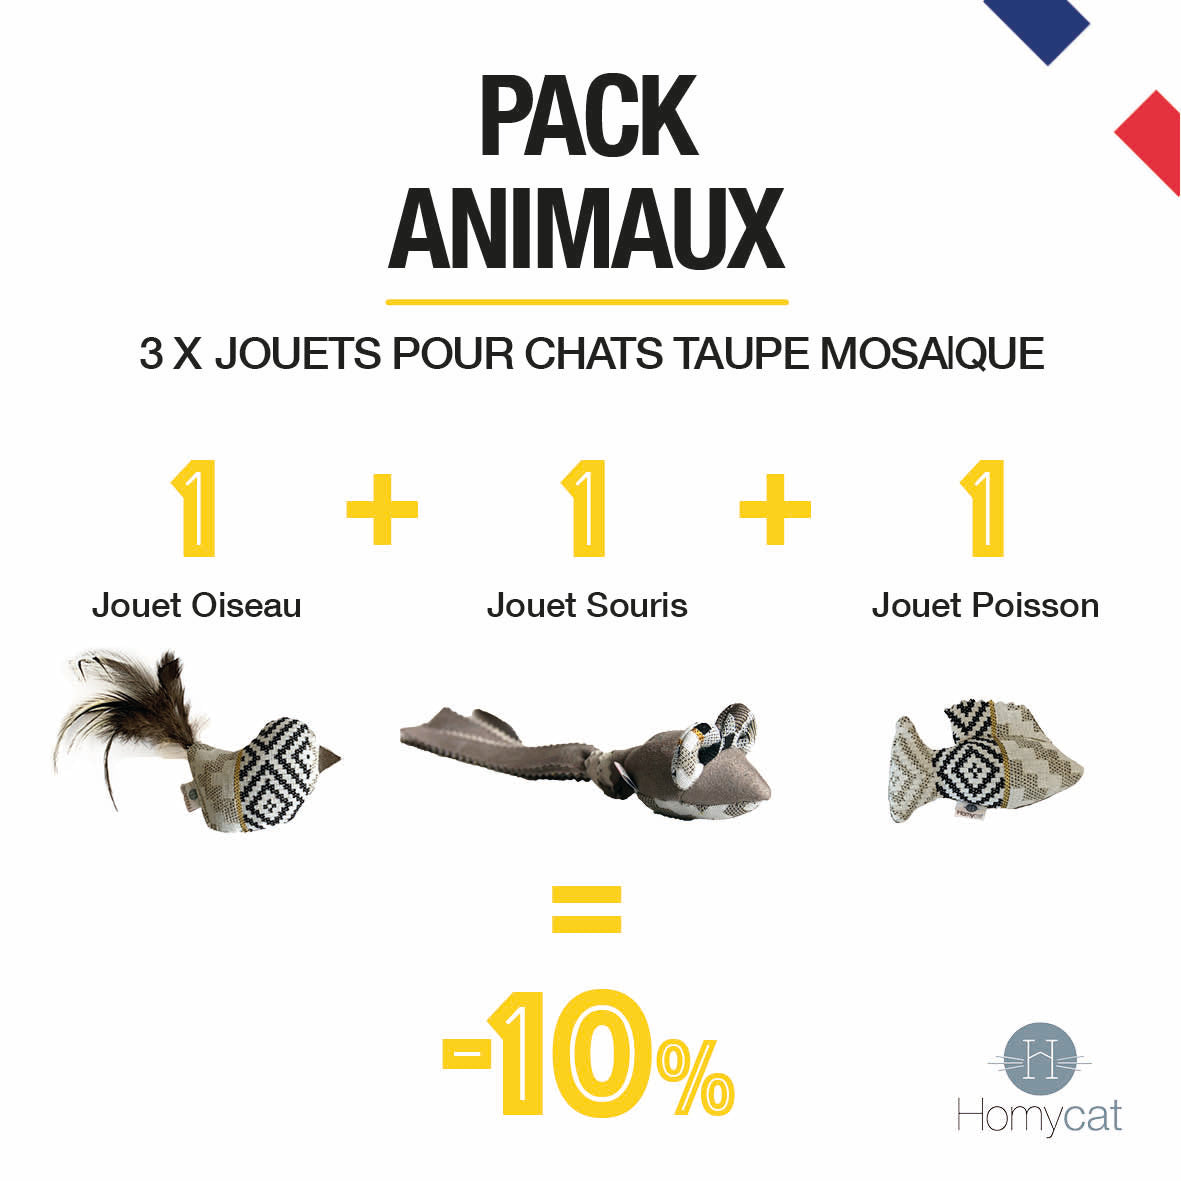 Pack Animaux - 3 x Jouets Animaux pour chats (Poisson + Souris + Oiseau)